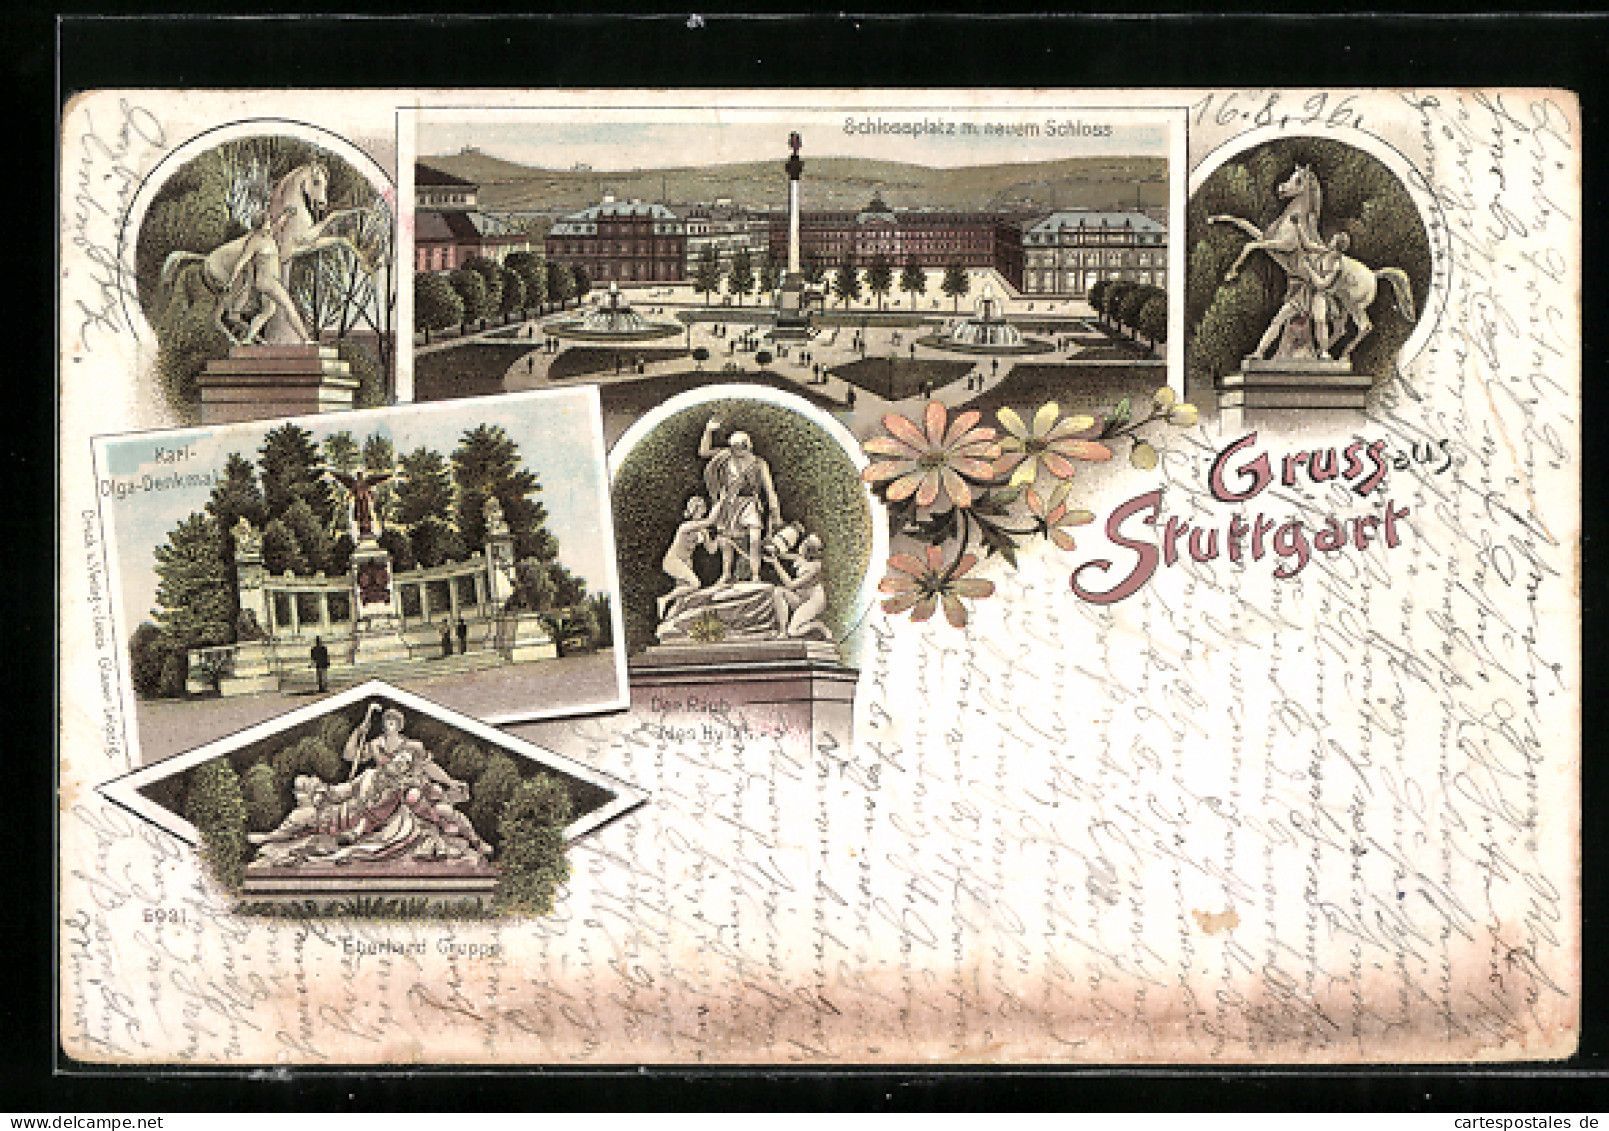 Lithographie Ganzsache Württemberg PP11F36 /03: Stuttgart, Schlossplatz Mit Schloss, Der Raub Des Hylas, Eberhardgrup  - Briefkaarten